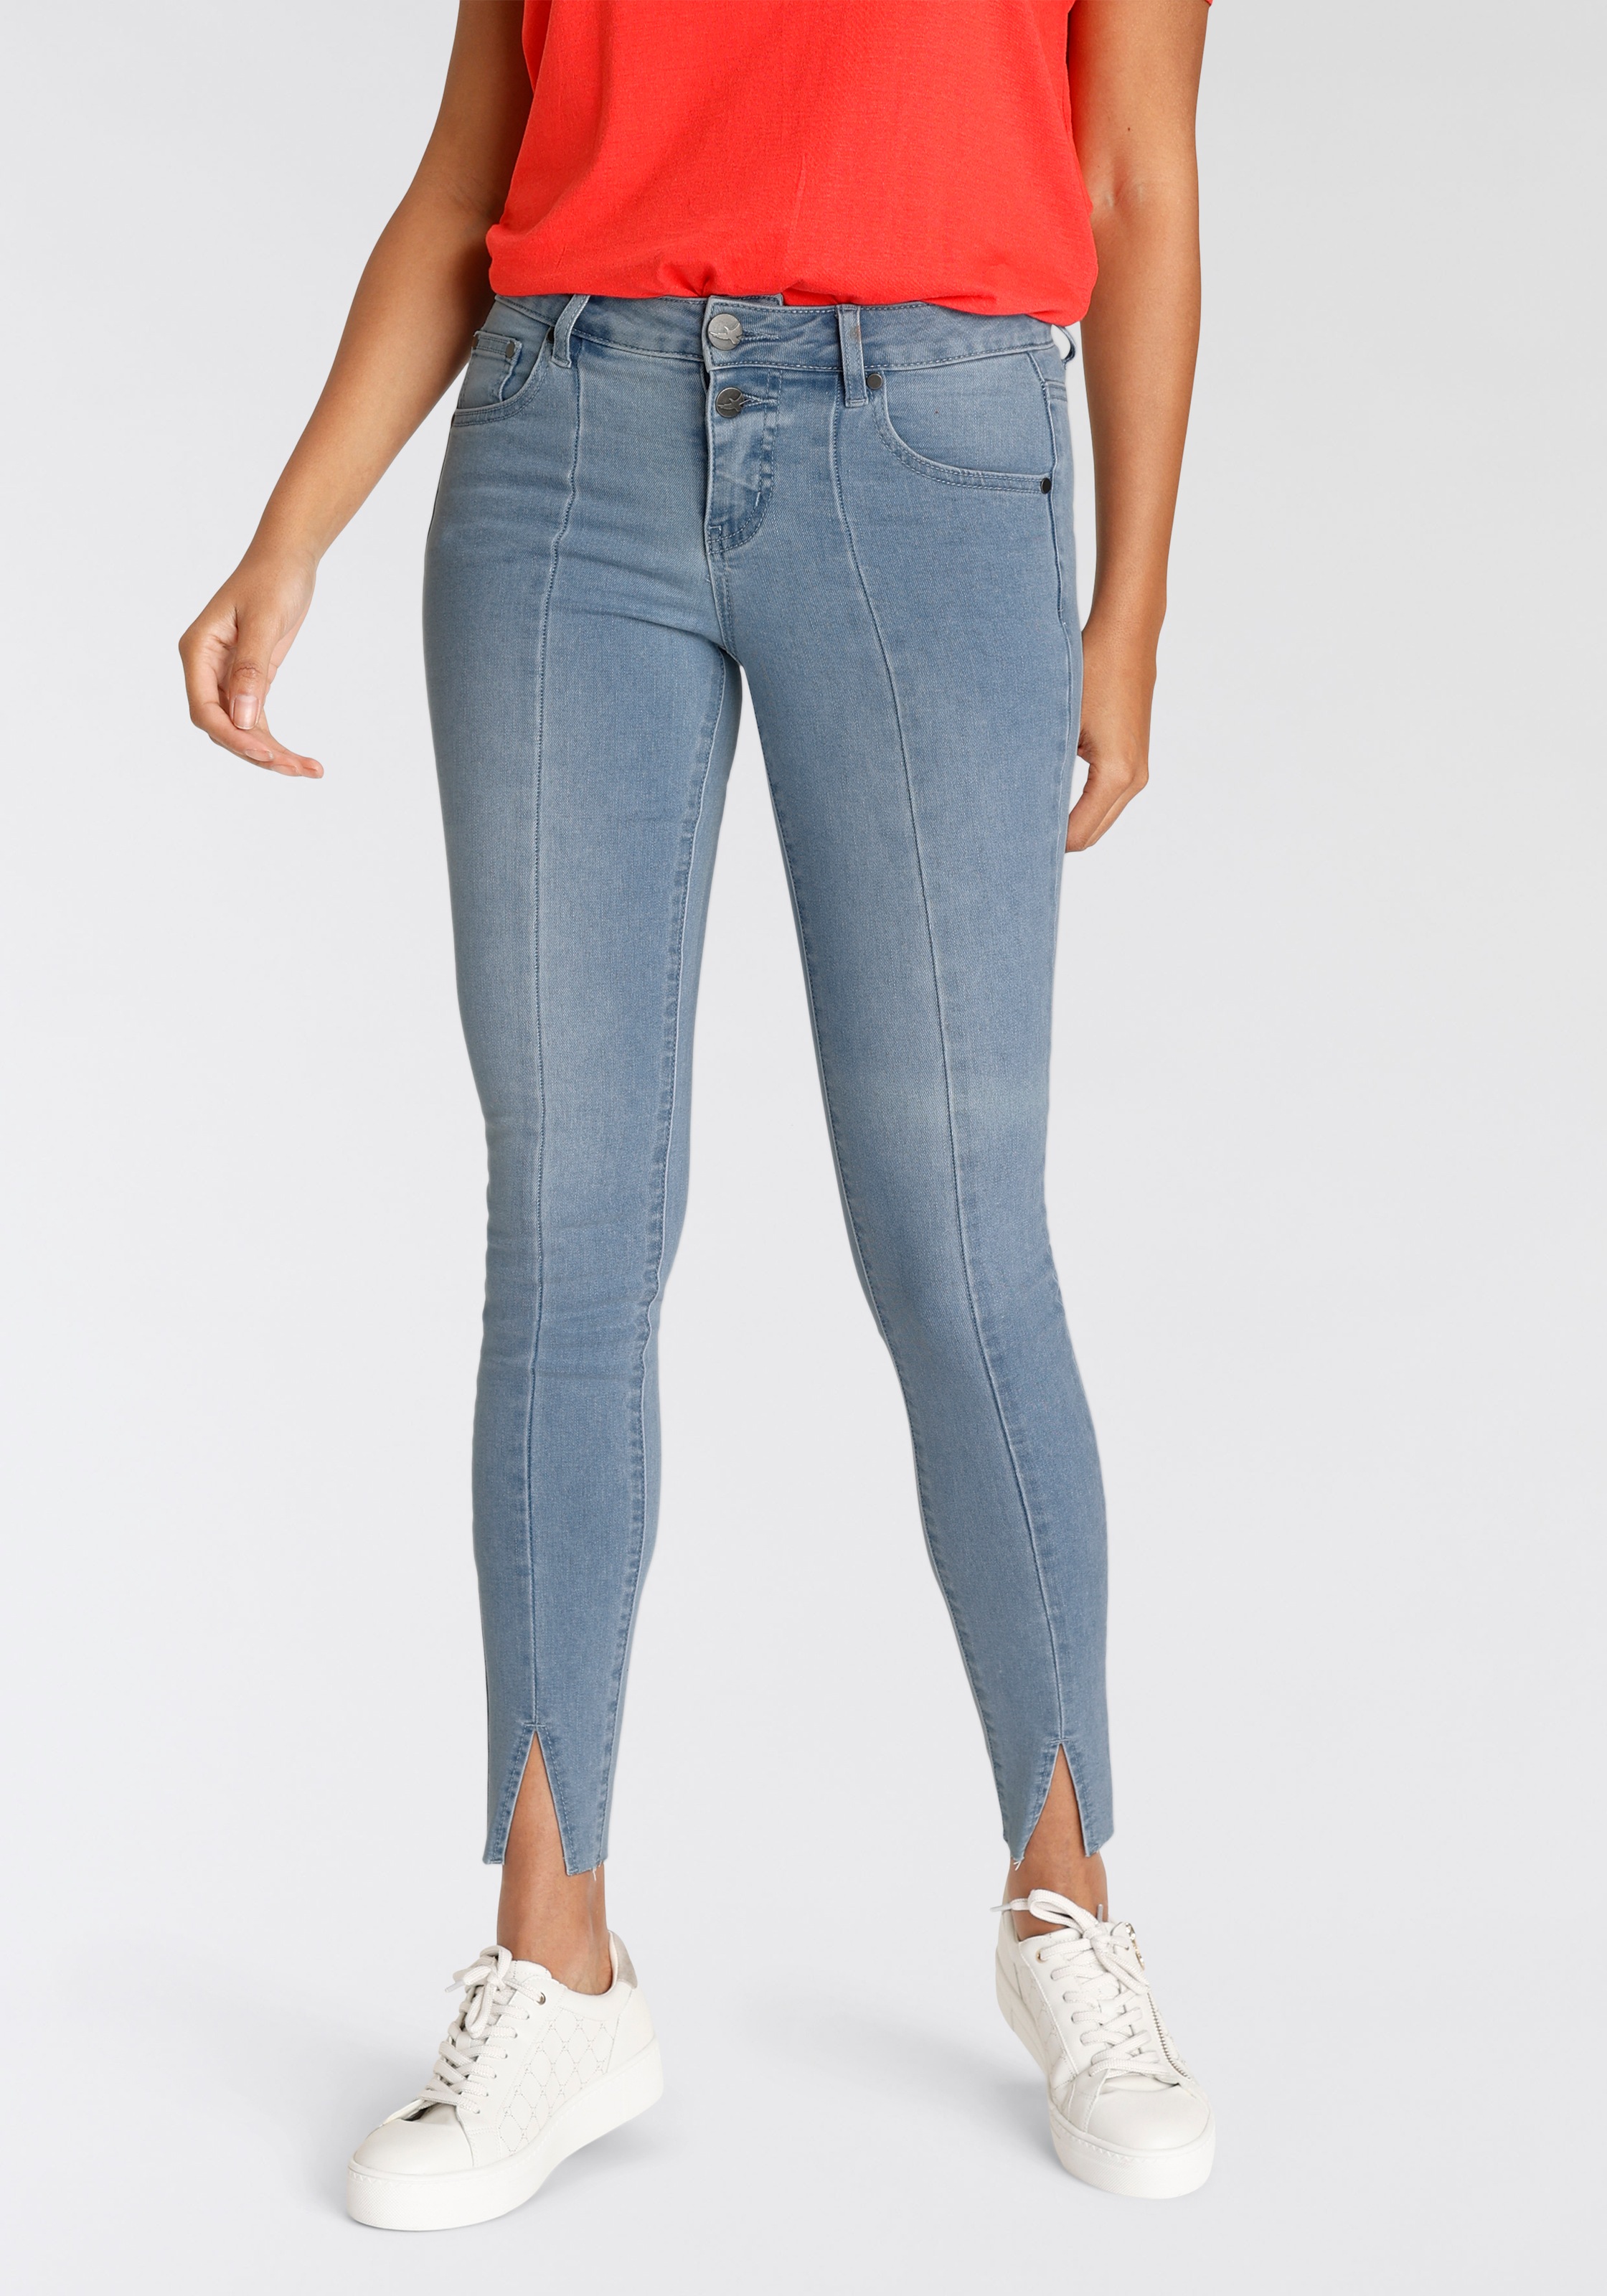 Jeans für Damen shoppen | COUTURISTA Shop